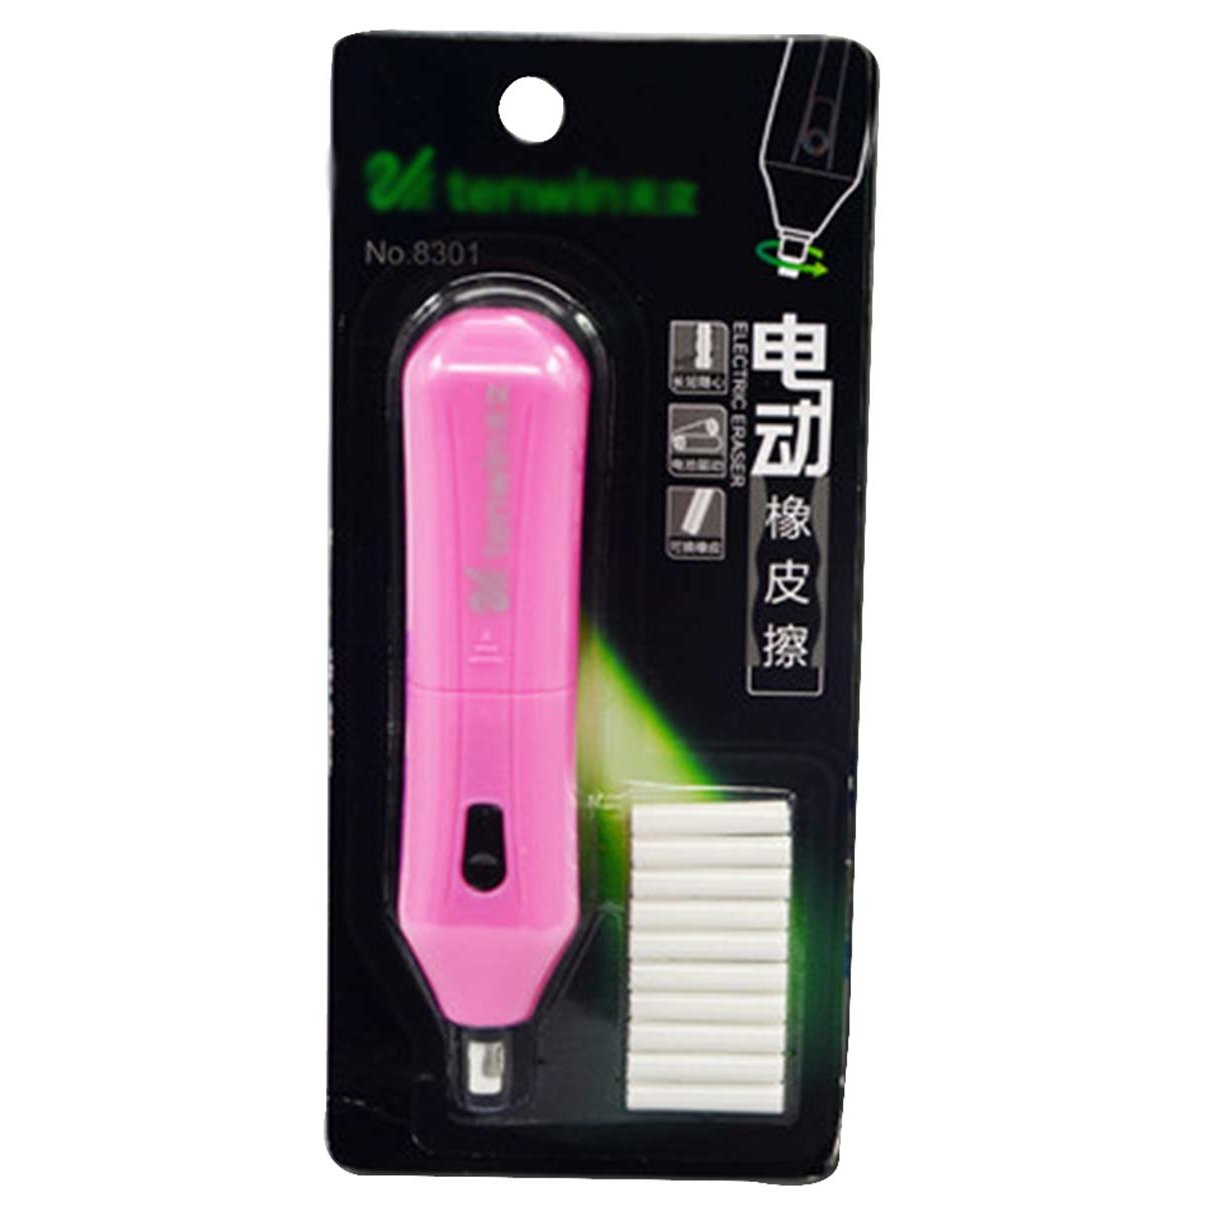 Electric Eraser Creative Eraser Office Stationery Drawing Eraser, Pink